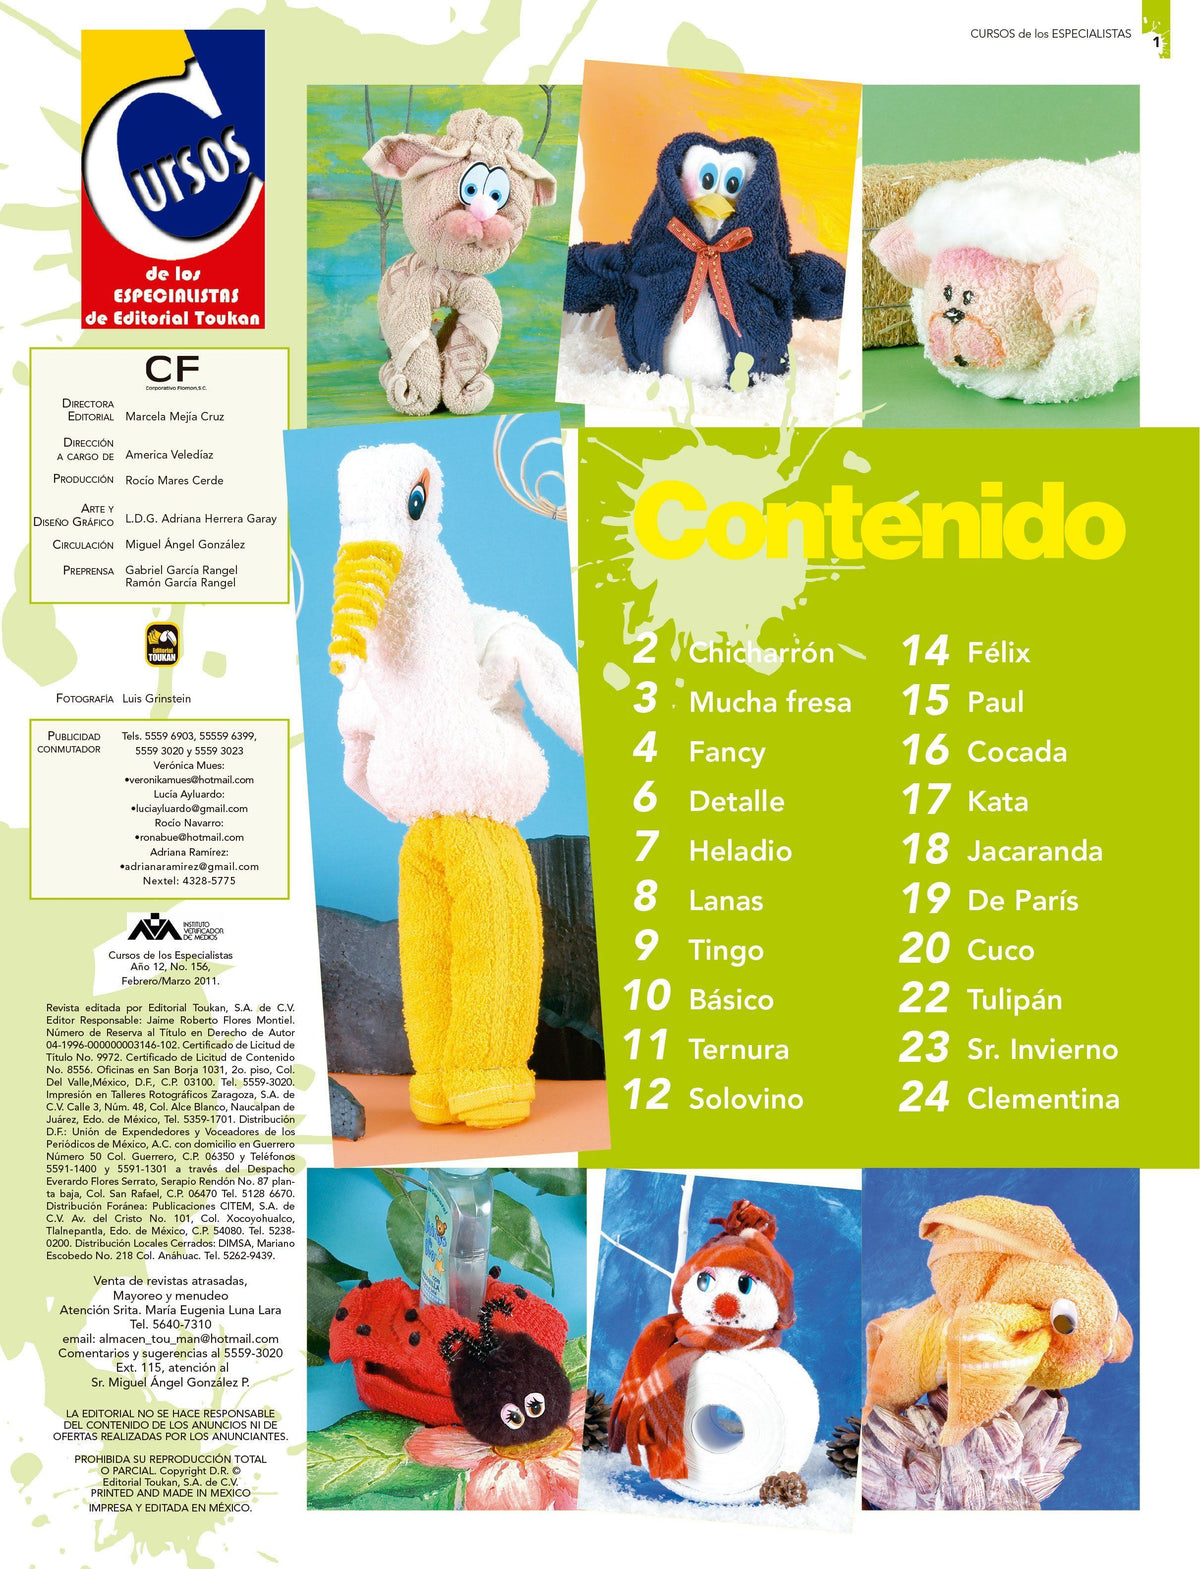 Cursos de los Especialistas 156 - Dise̱o con toallas - Formato Digital - ToukanMango